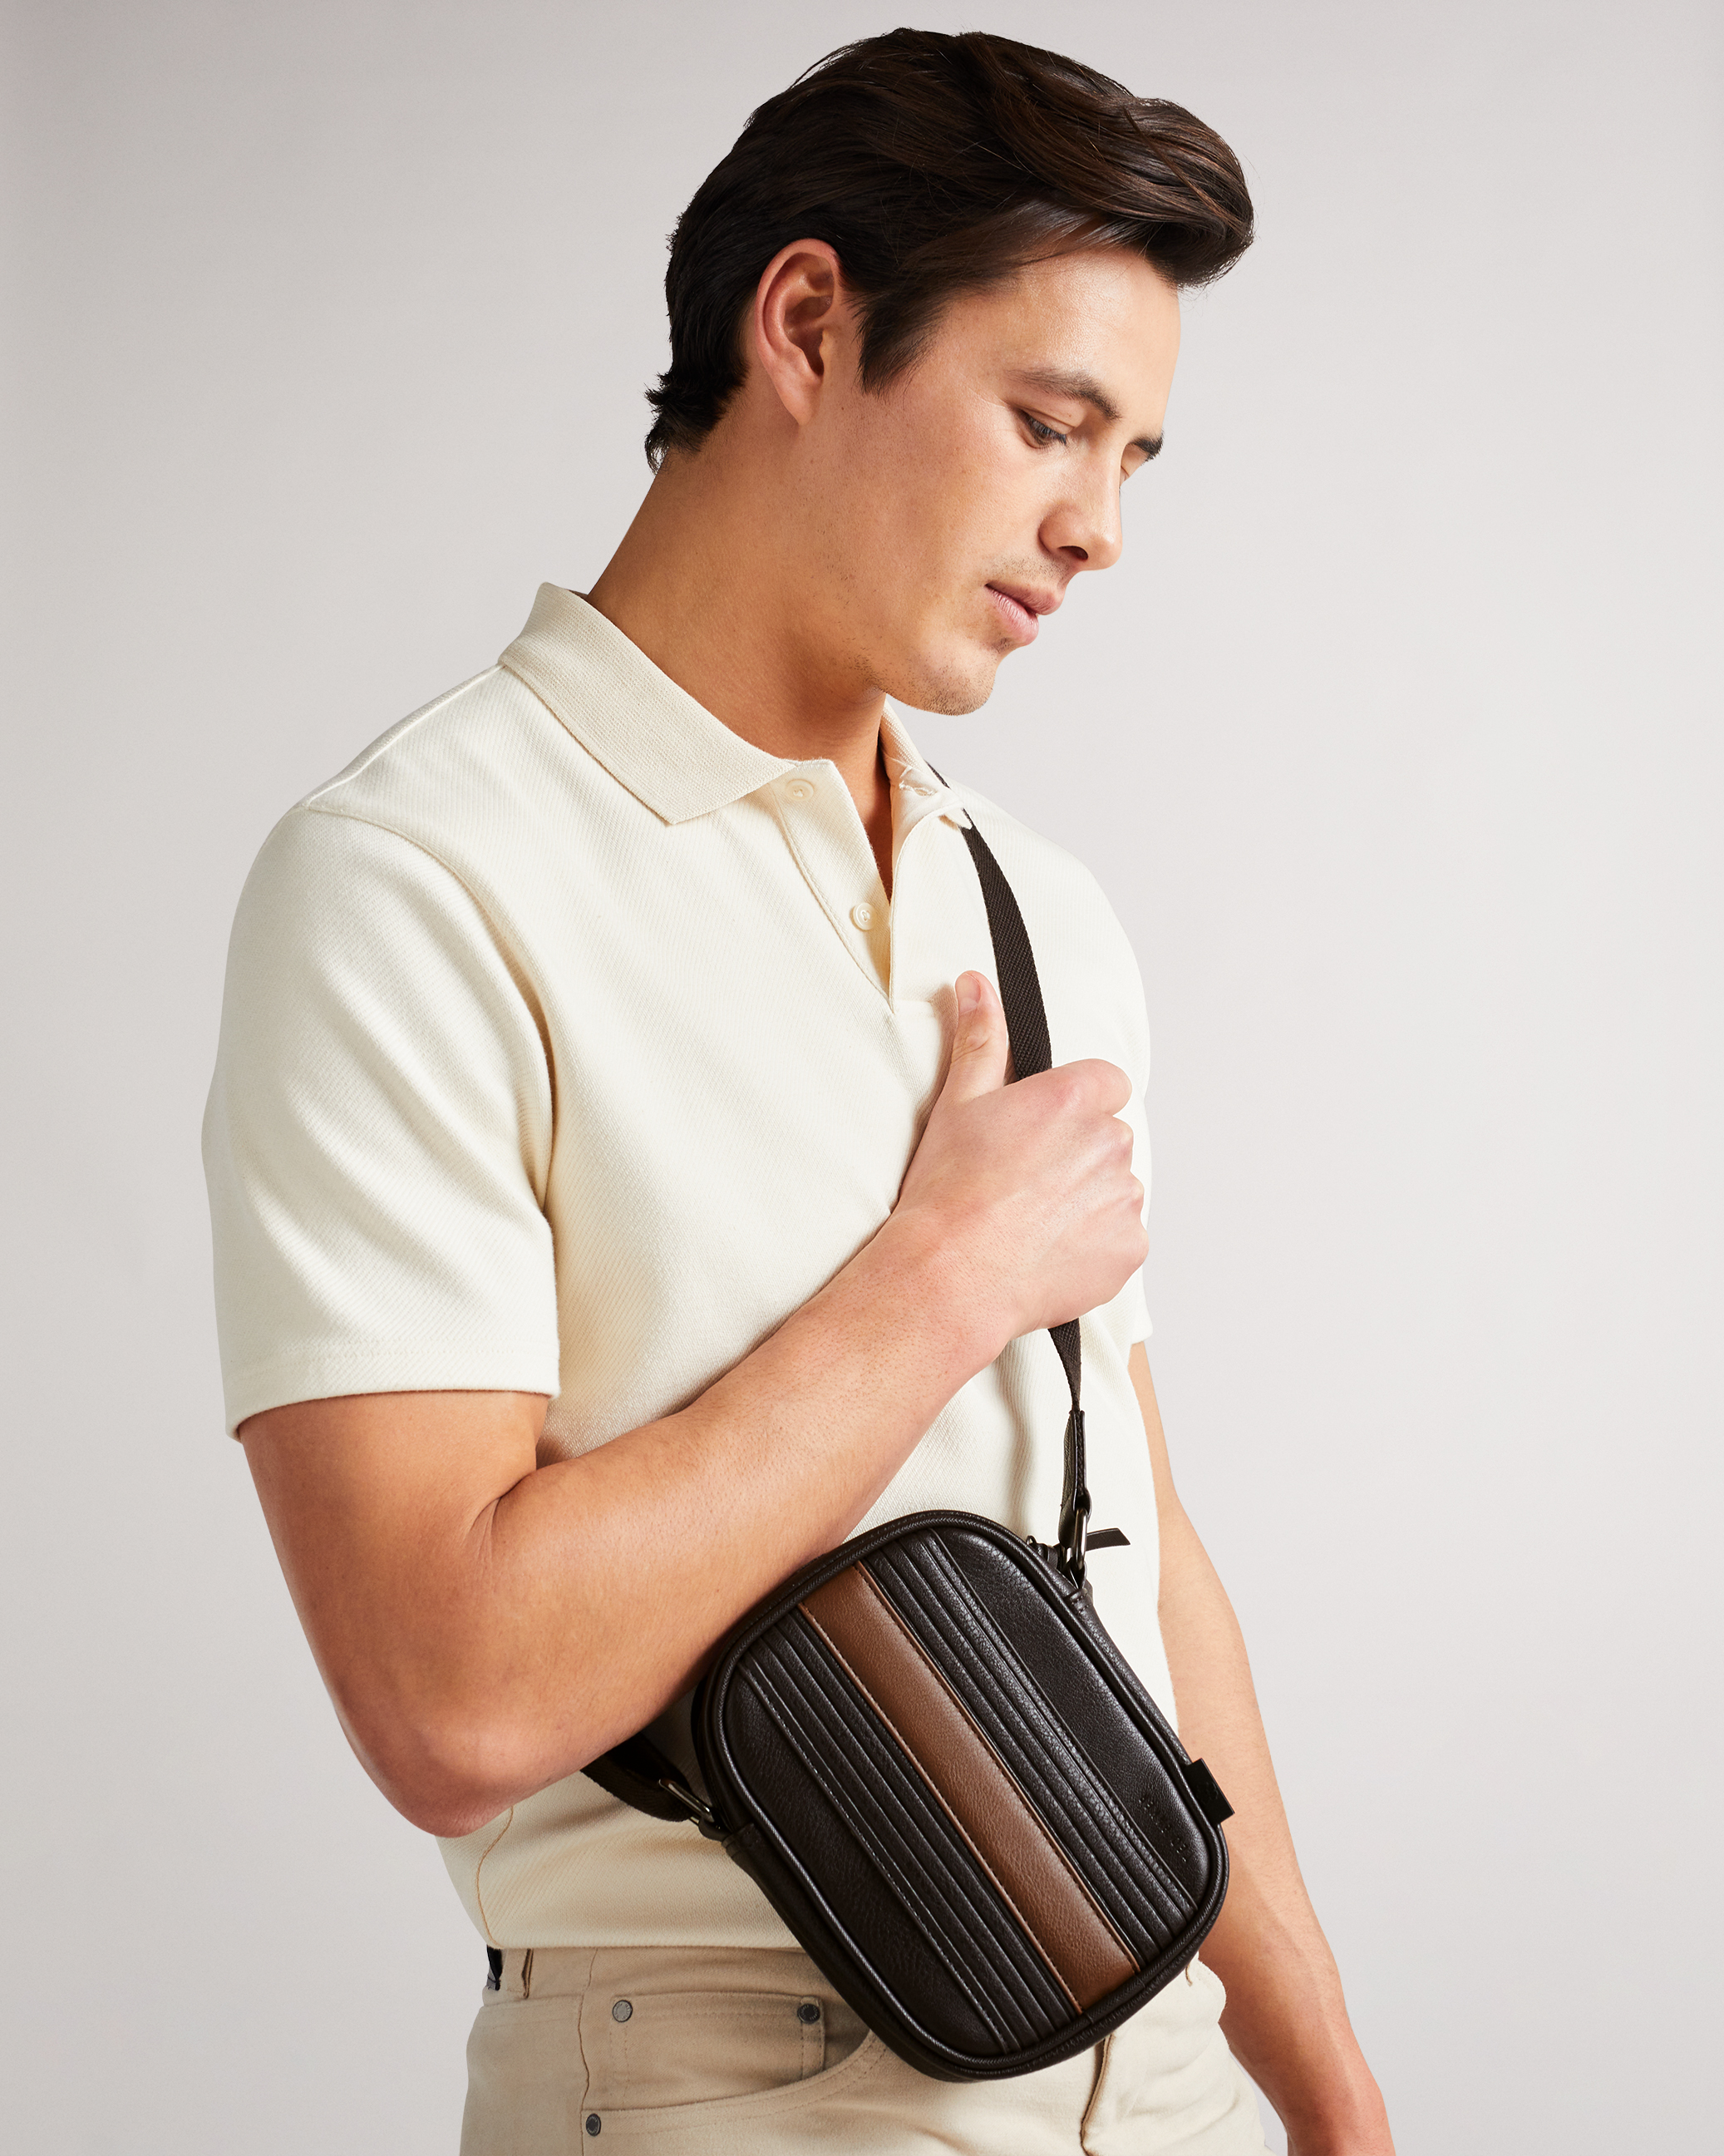 Ted Baker Gabbee Branded Shell Cross-body Bag for Men